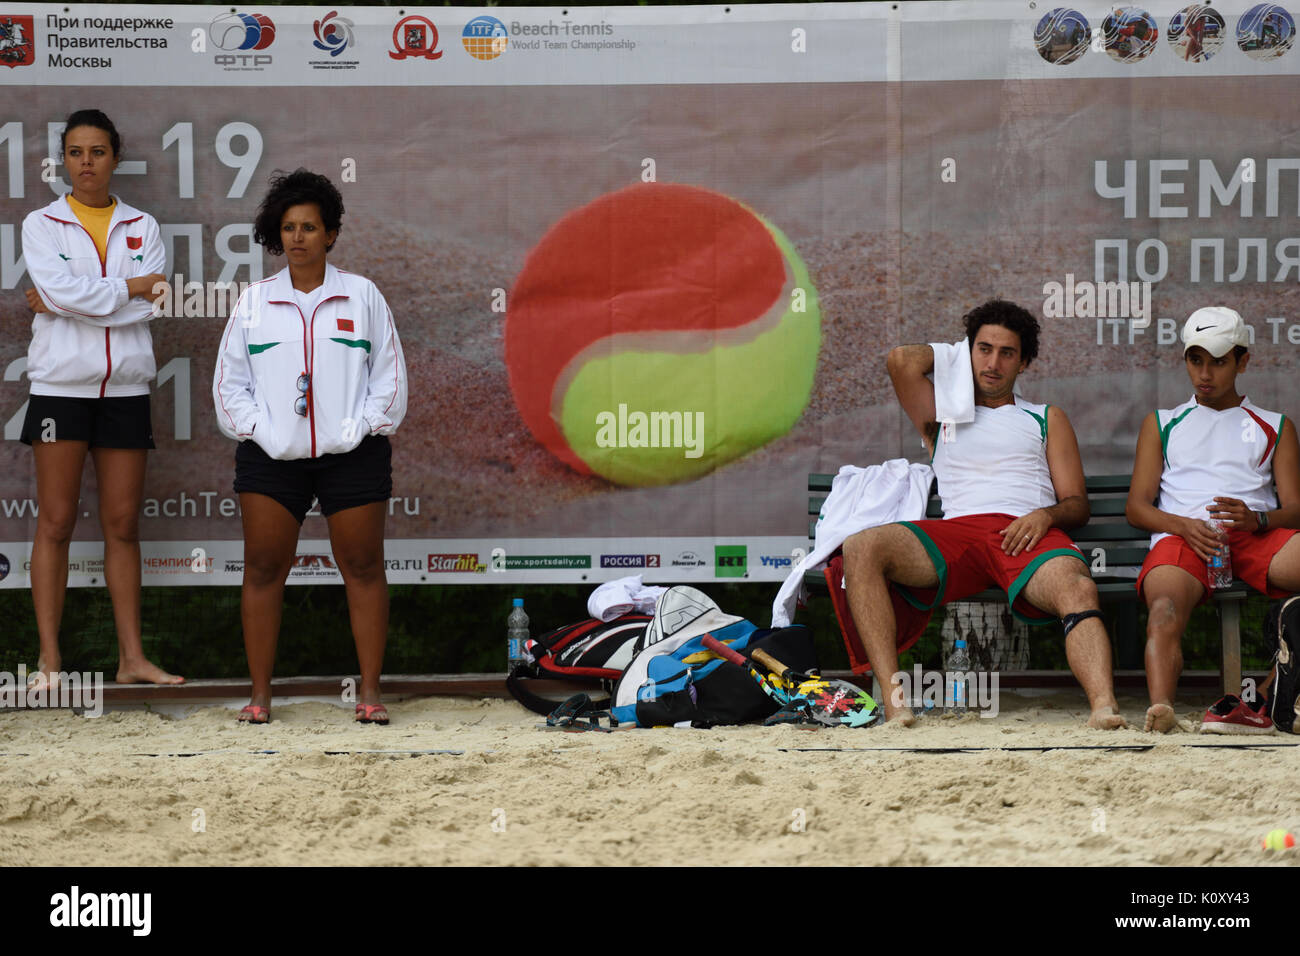 Moscou, Russie - le 15 juillet 2015 : l'équipe Maroc en appui sur le banc pendant l'ITF Beach Tennis World Team Championship. Le Maroc participe à la première fois Banque D'Images